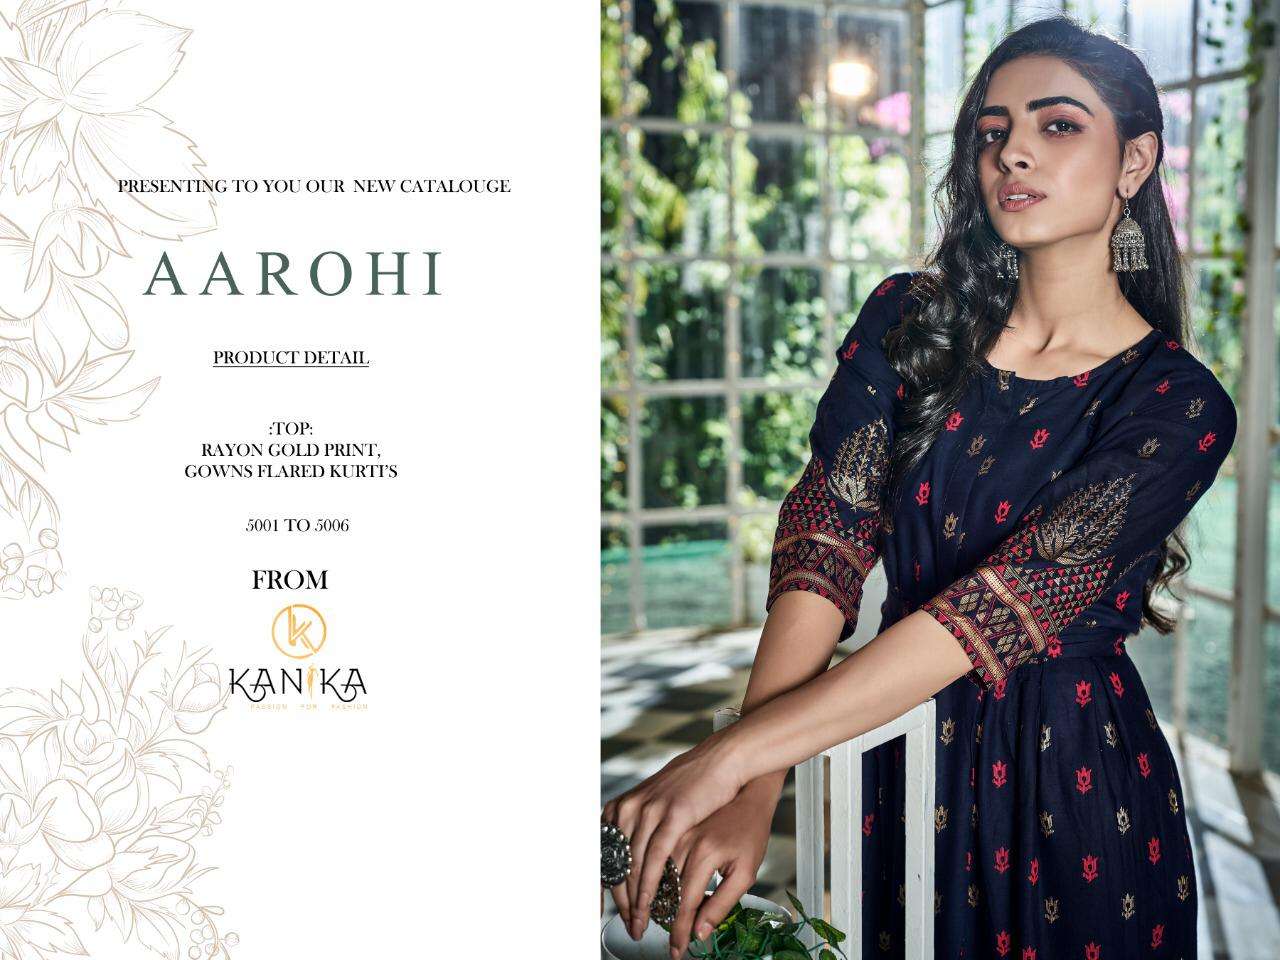 Buy Aarohi Kanika Online Wholesale Designer Rayon Gown Flar Kurtiss